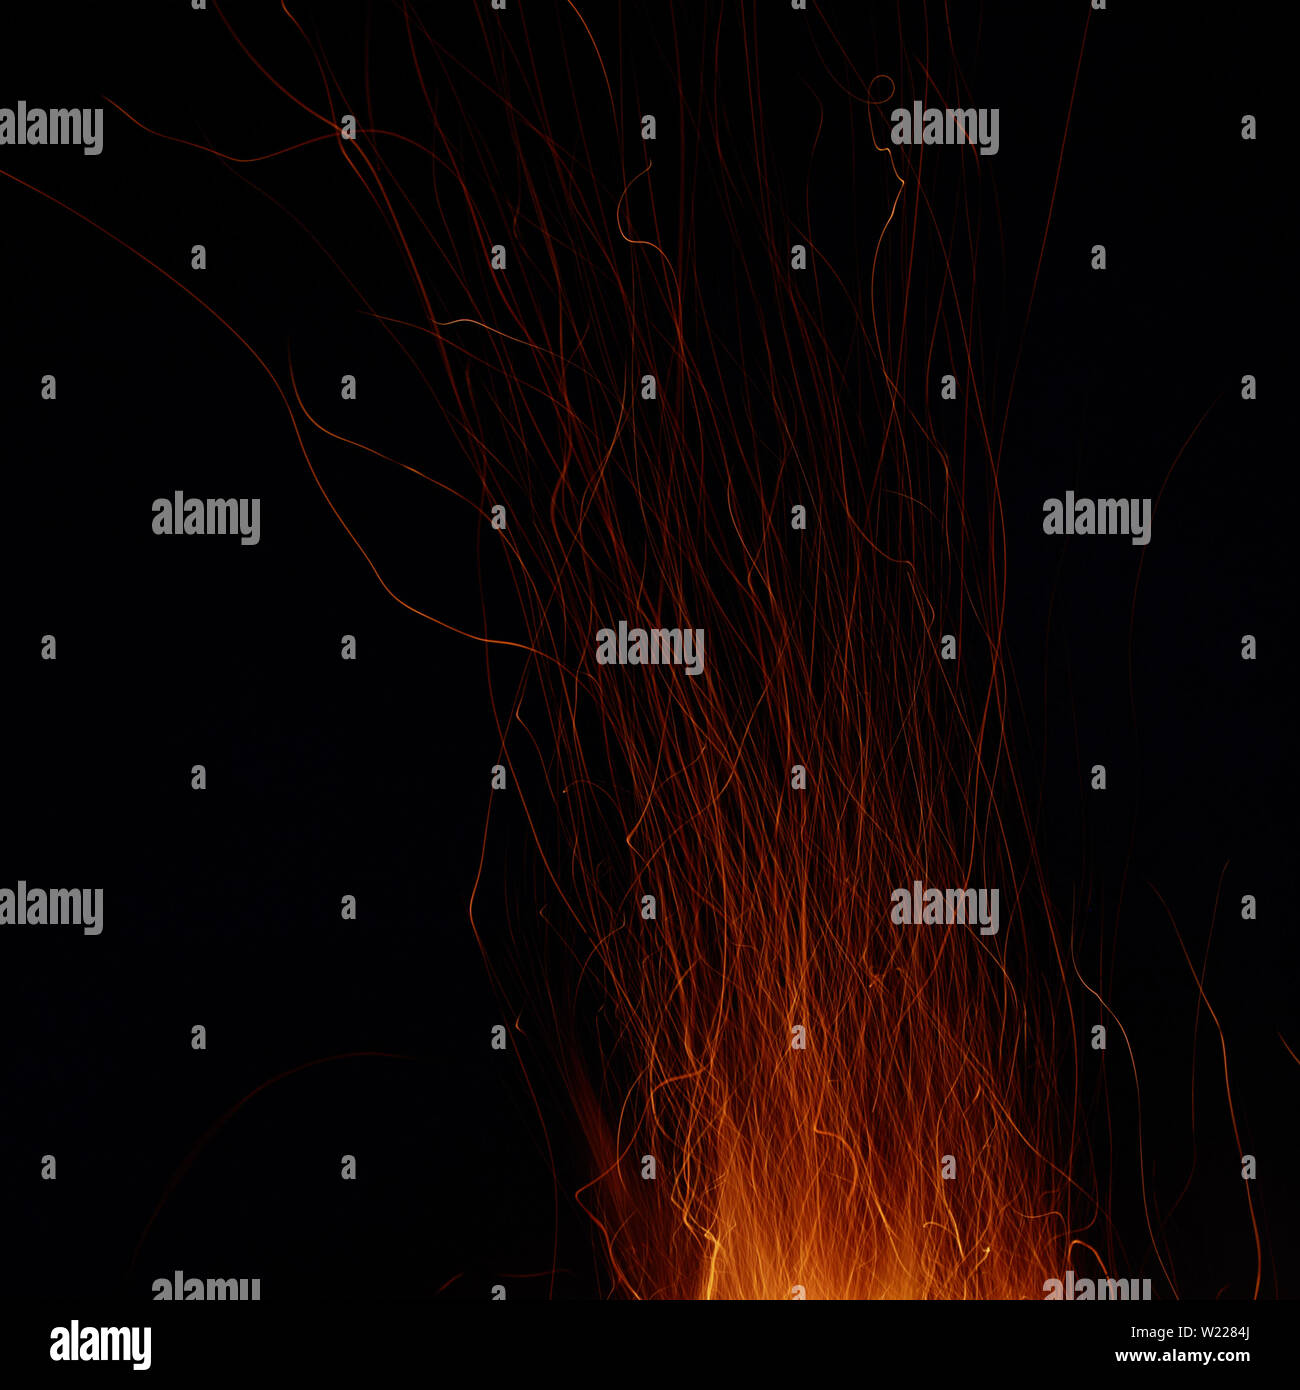 Immagine astratta di un incendio scintille su uno sfondo nero. Girato in una lunga esposizione Foto Stock